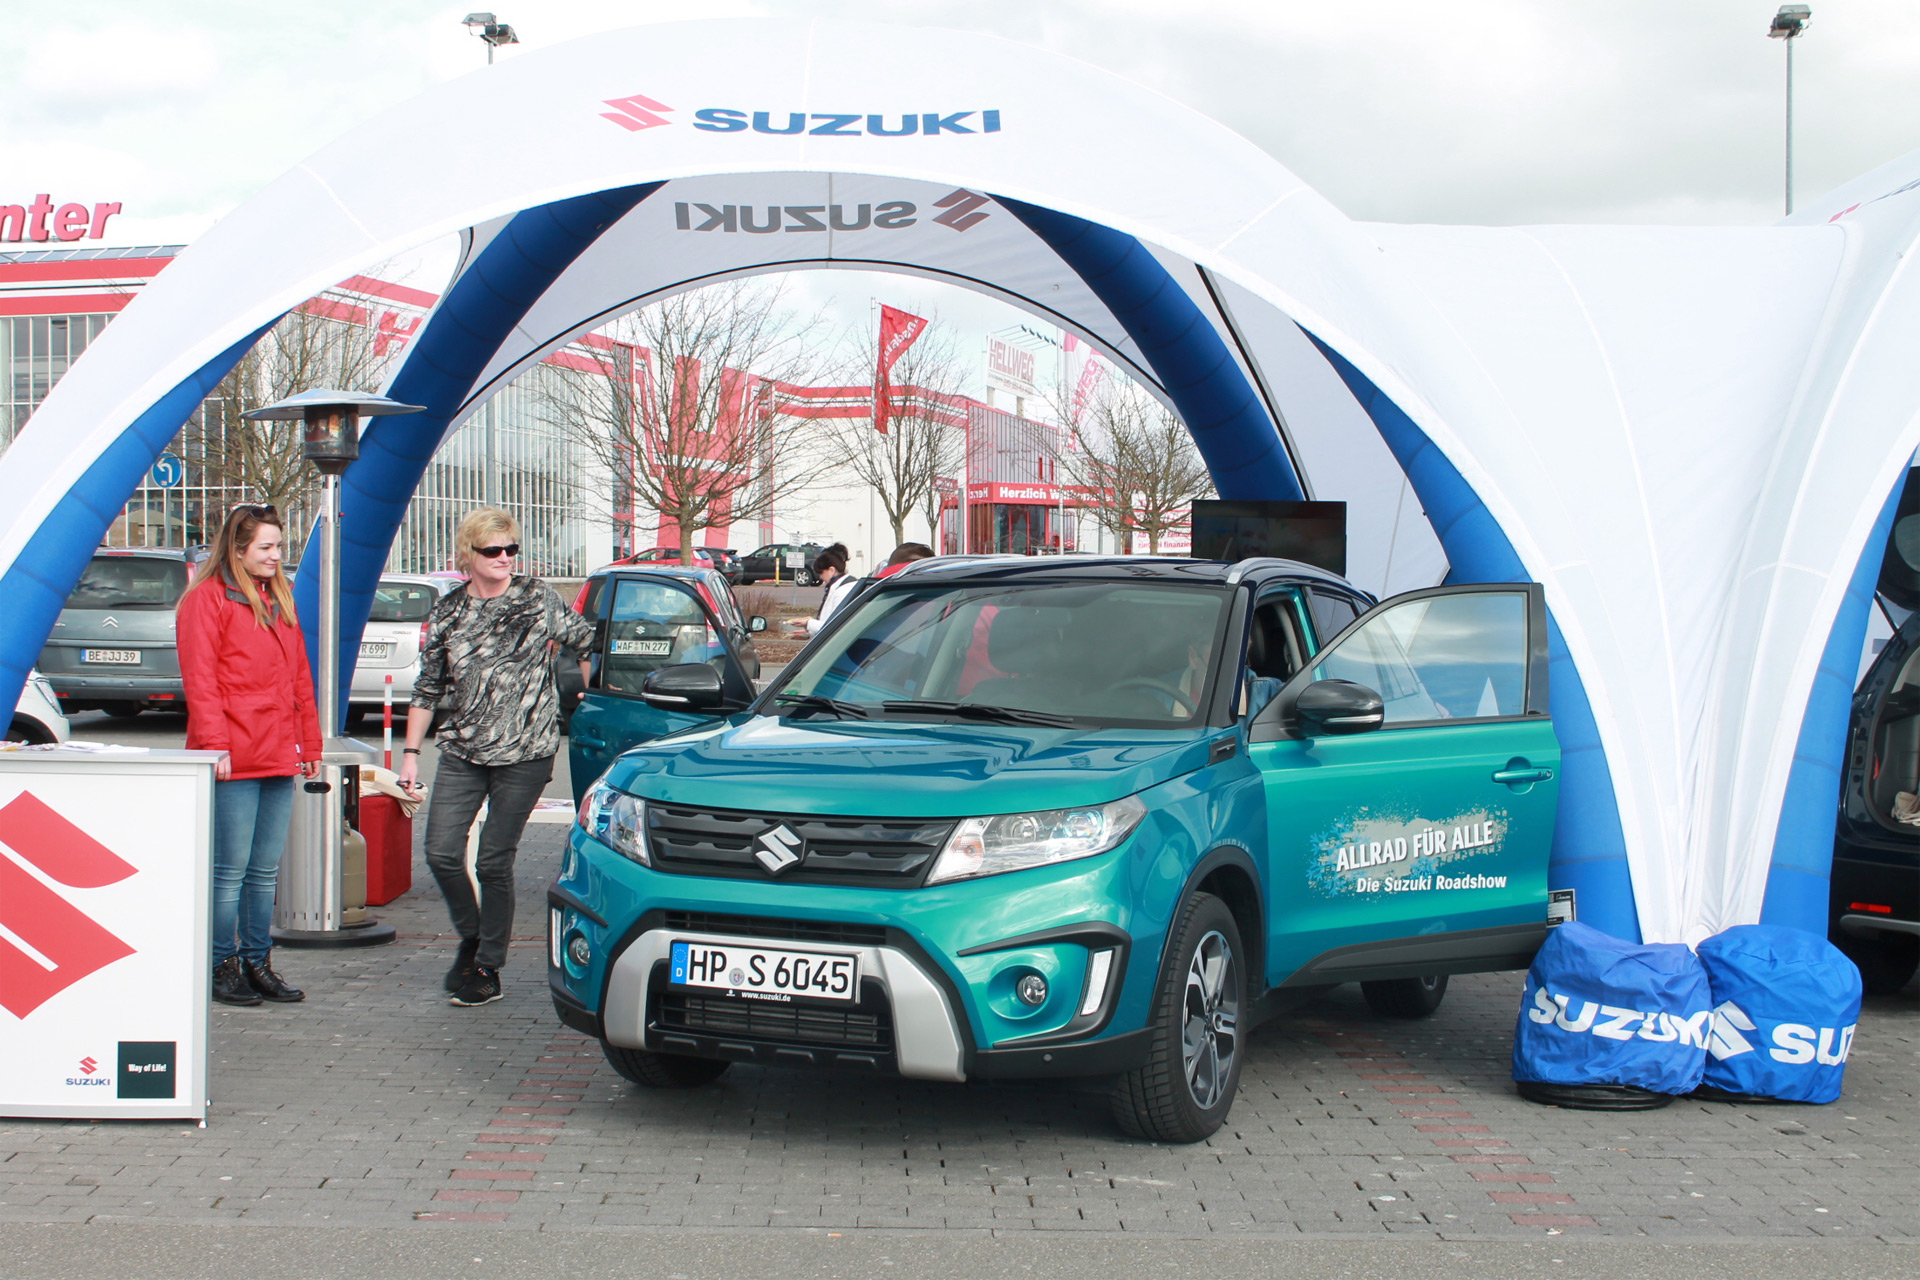 Suzuki Roadshow Allrad für alle – Beckum